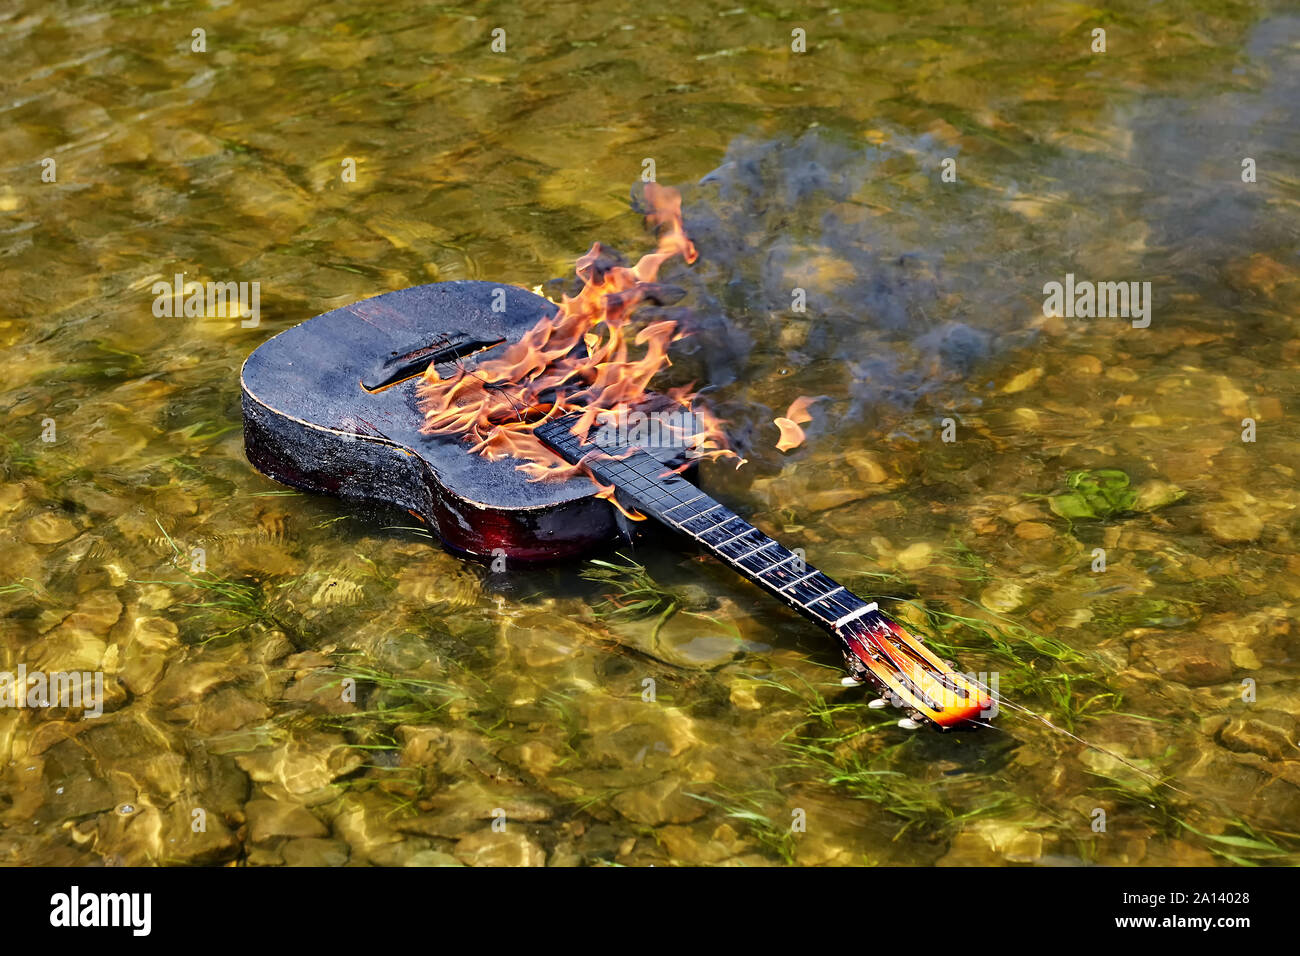 Une guitare enflammée flotte sur les rives, le feu brûle sur sa surface. À  partir de la flamme est de la fumée noire. Les cordes sont déchirés. Dérive  d'un instrument de musique